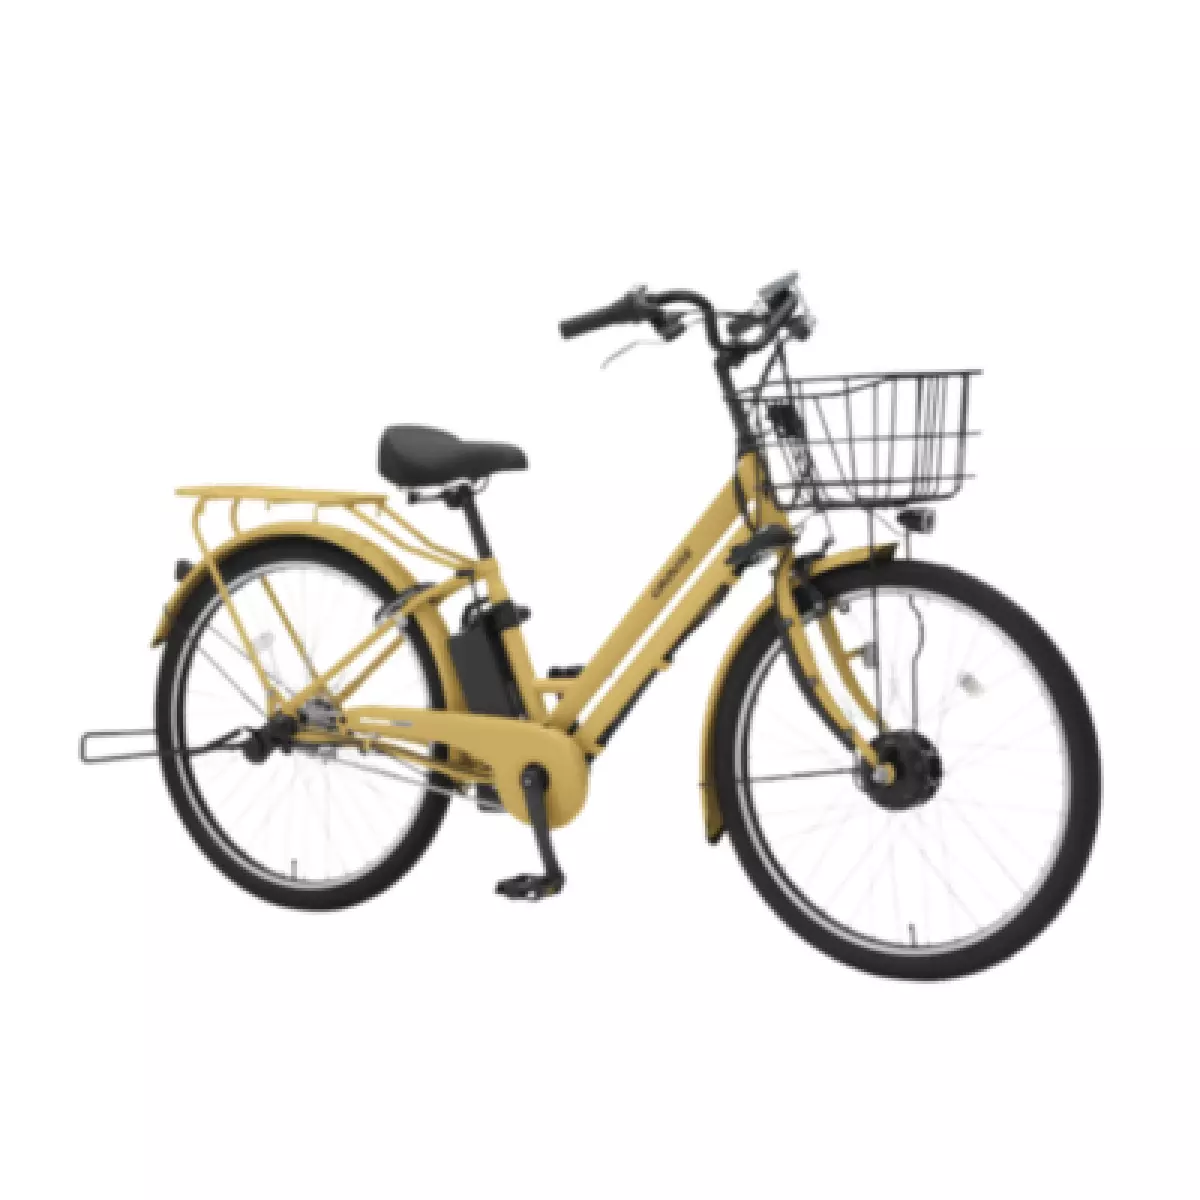 Khung xe đạp điện màu Vàng trẻ trung